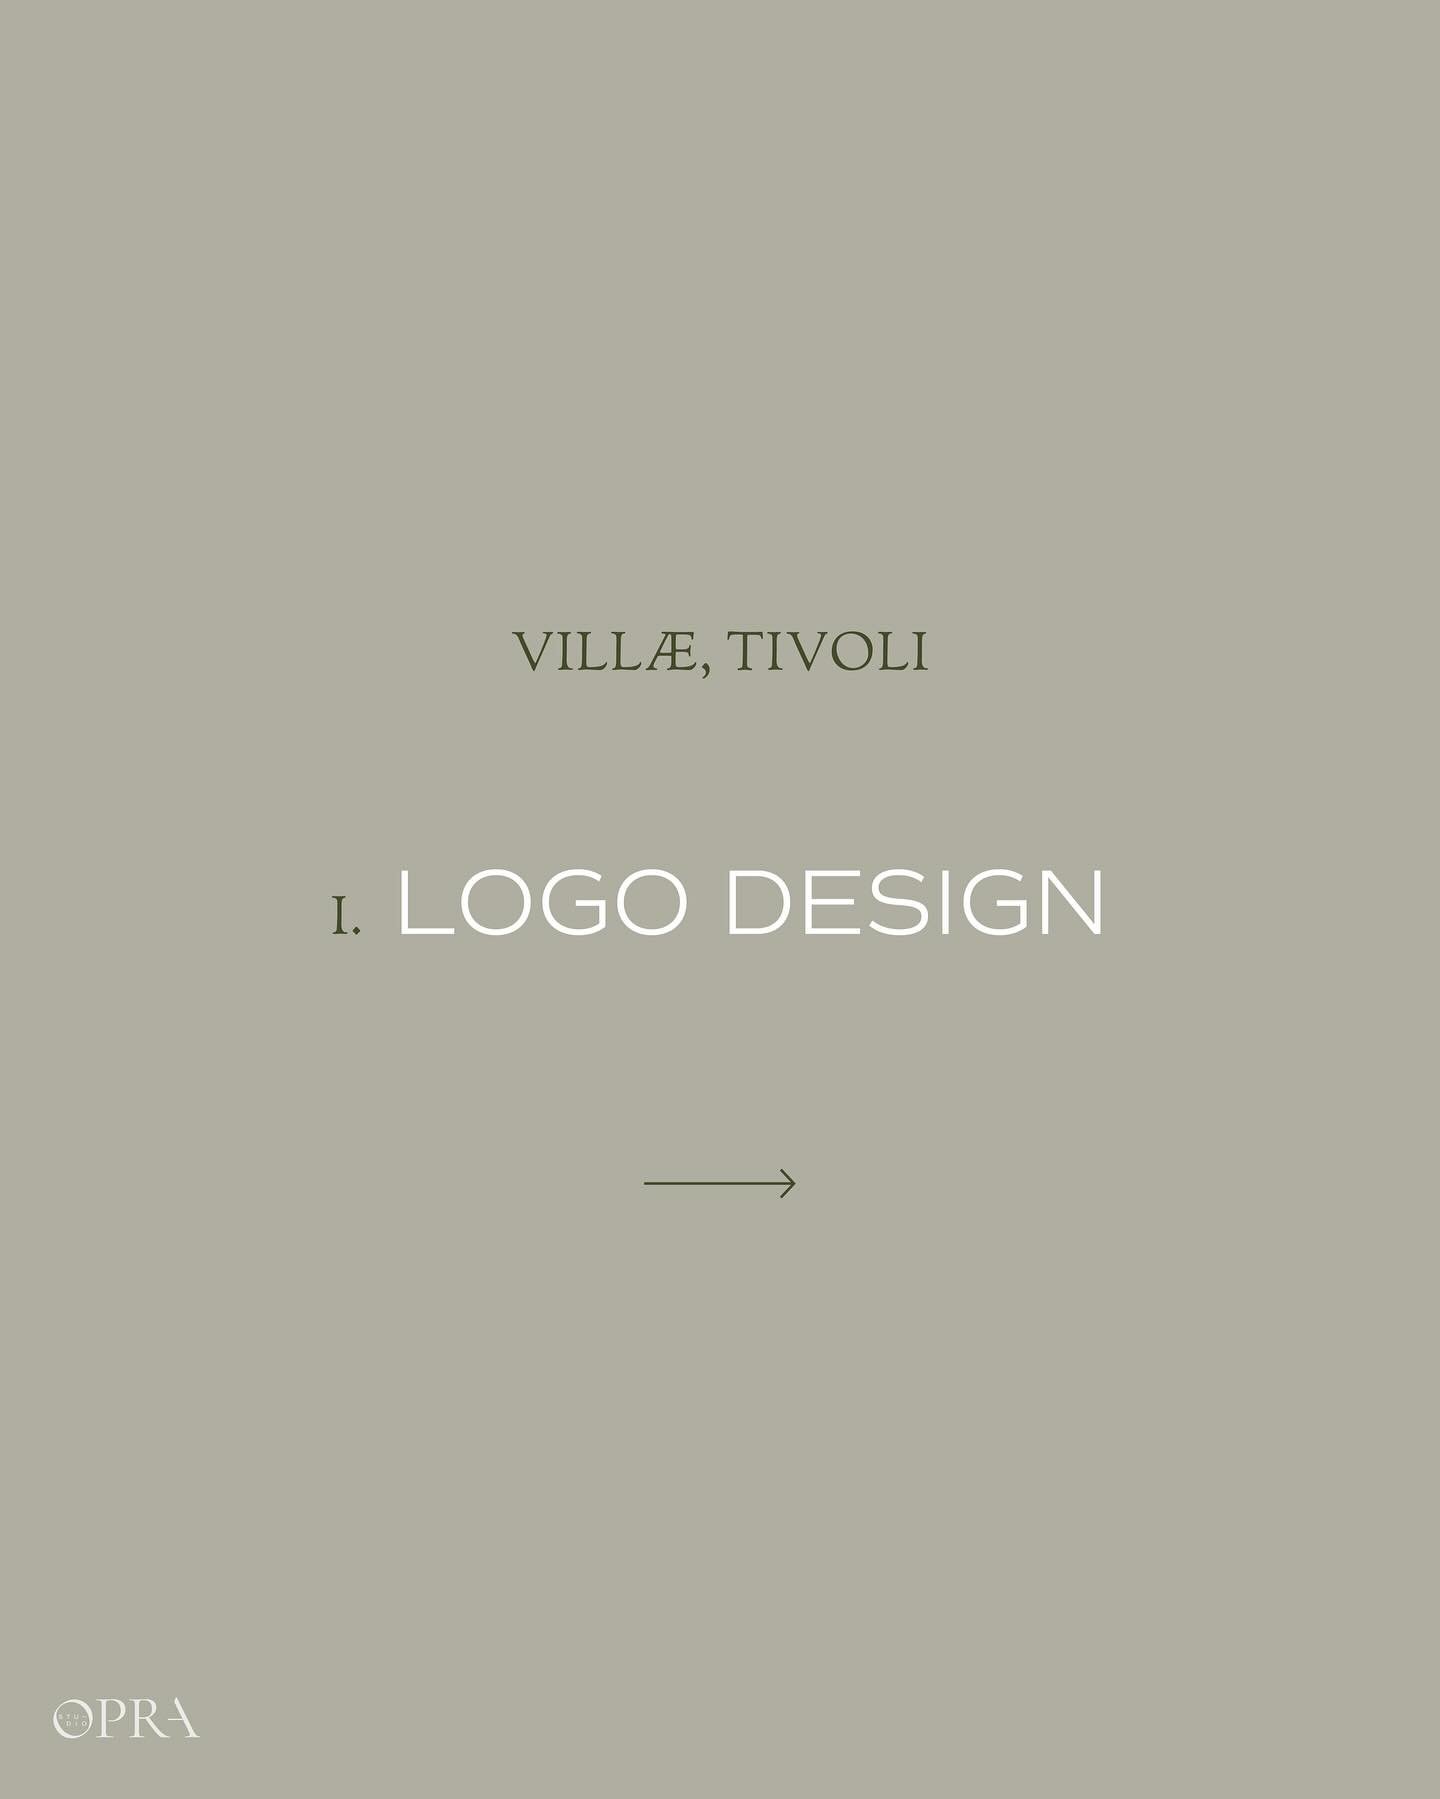 𝐋𝐨𝐠𝐨 𝐃𝐞𝐬𝐢𝐠𝐧 𝐩𝐞𝐫 𝐕𝐢𝐥𝐥𝐚𝐞, istituzione museale di Tivoli. 
.
Dietro ogni progetto di logo design si nasconde una progettazione spesso complessa, anche quando il risultato ci sembra &ldquo;semplice&rdquo;. 
Ogni elemento, allineamento,